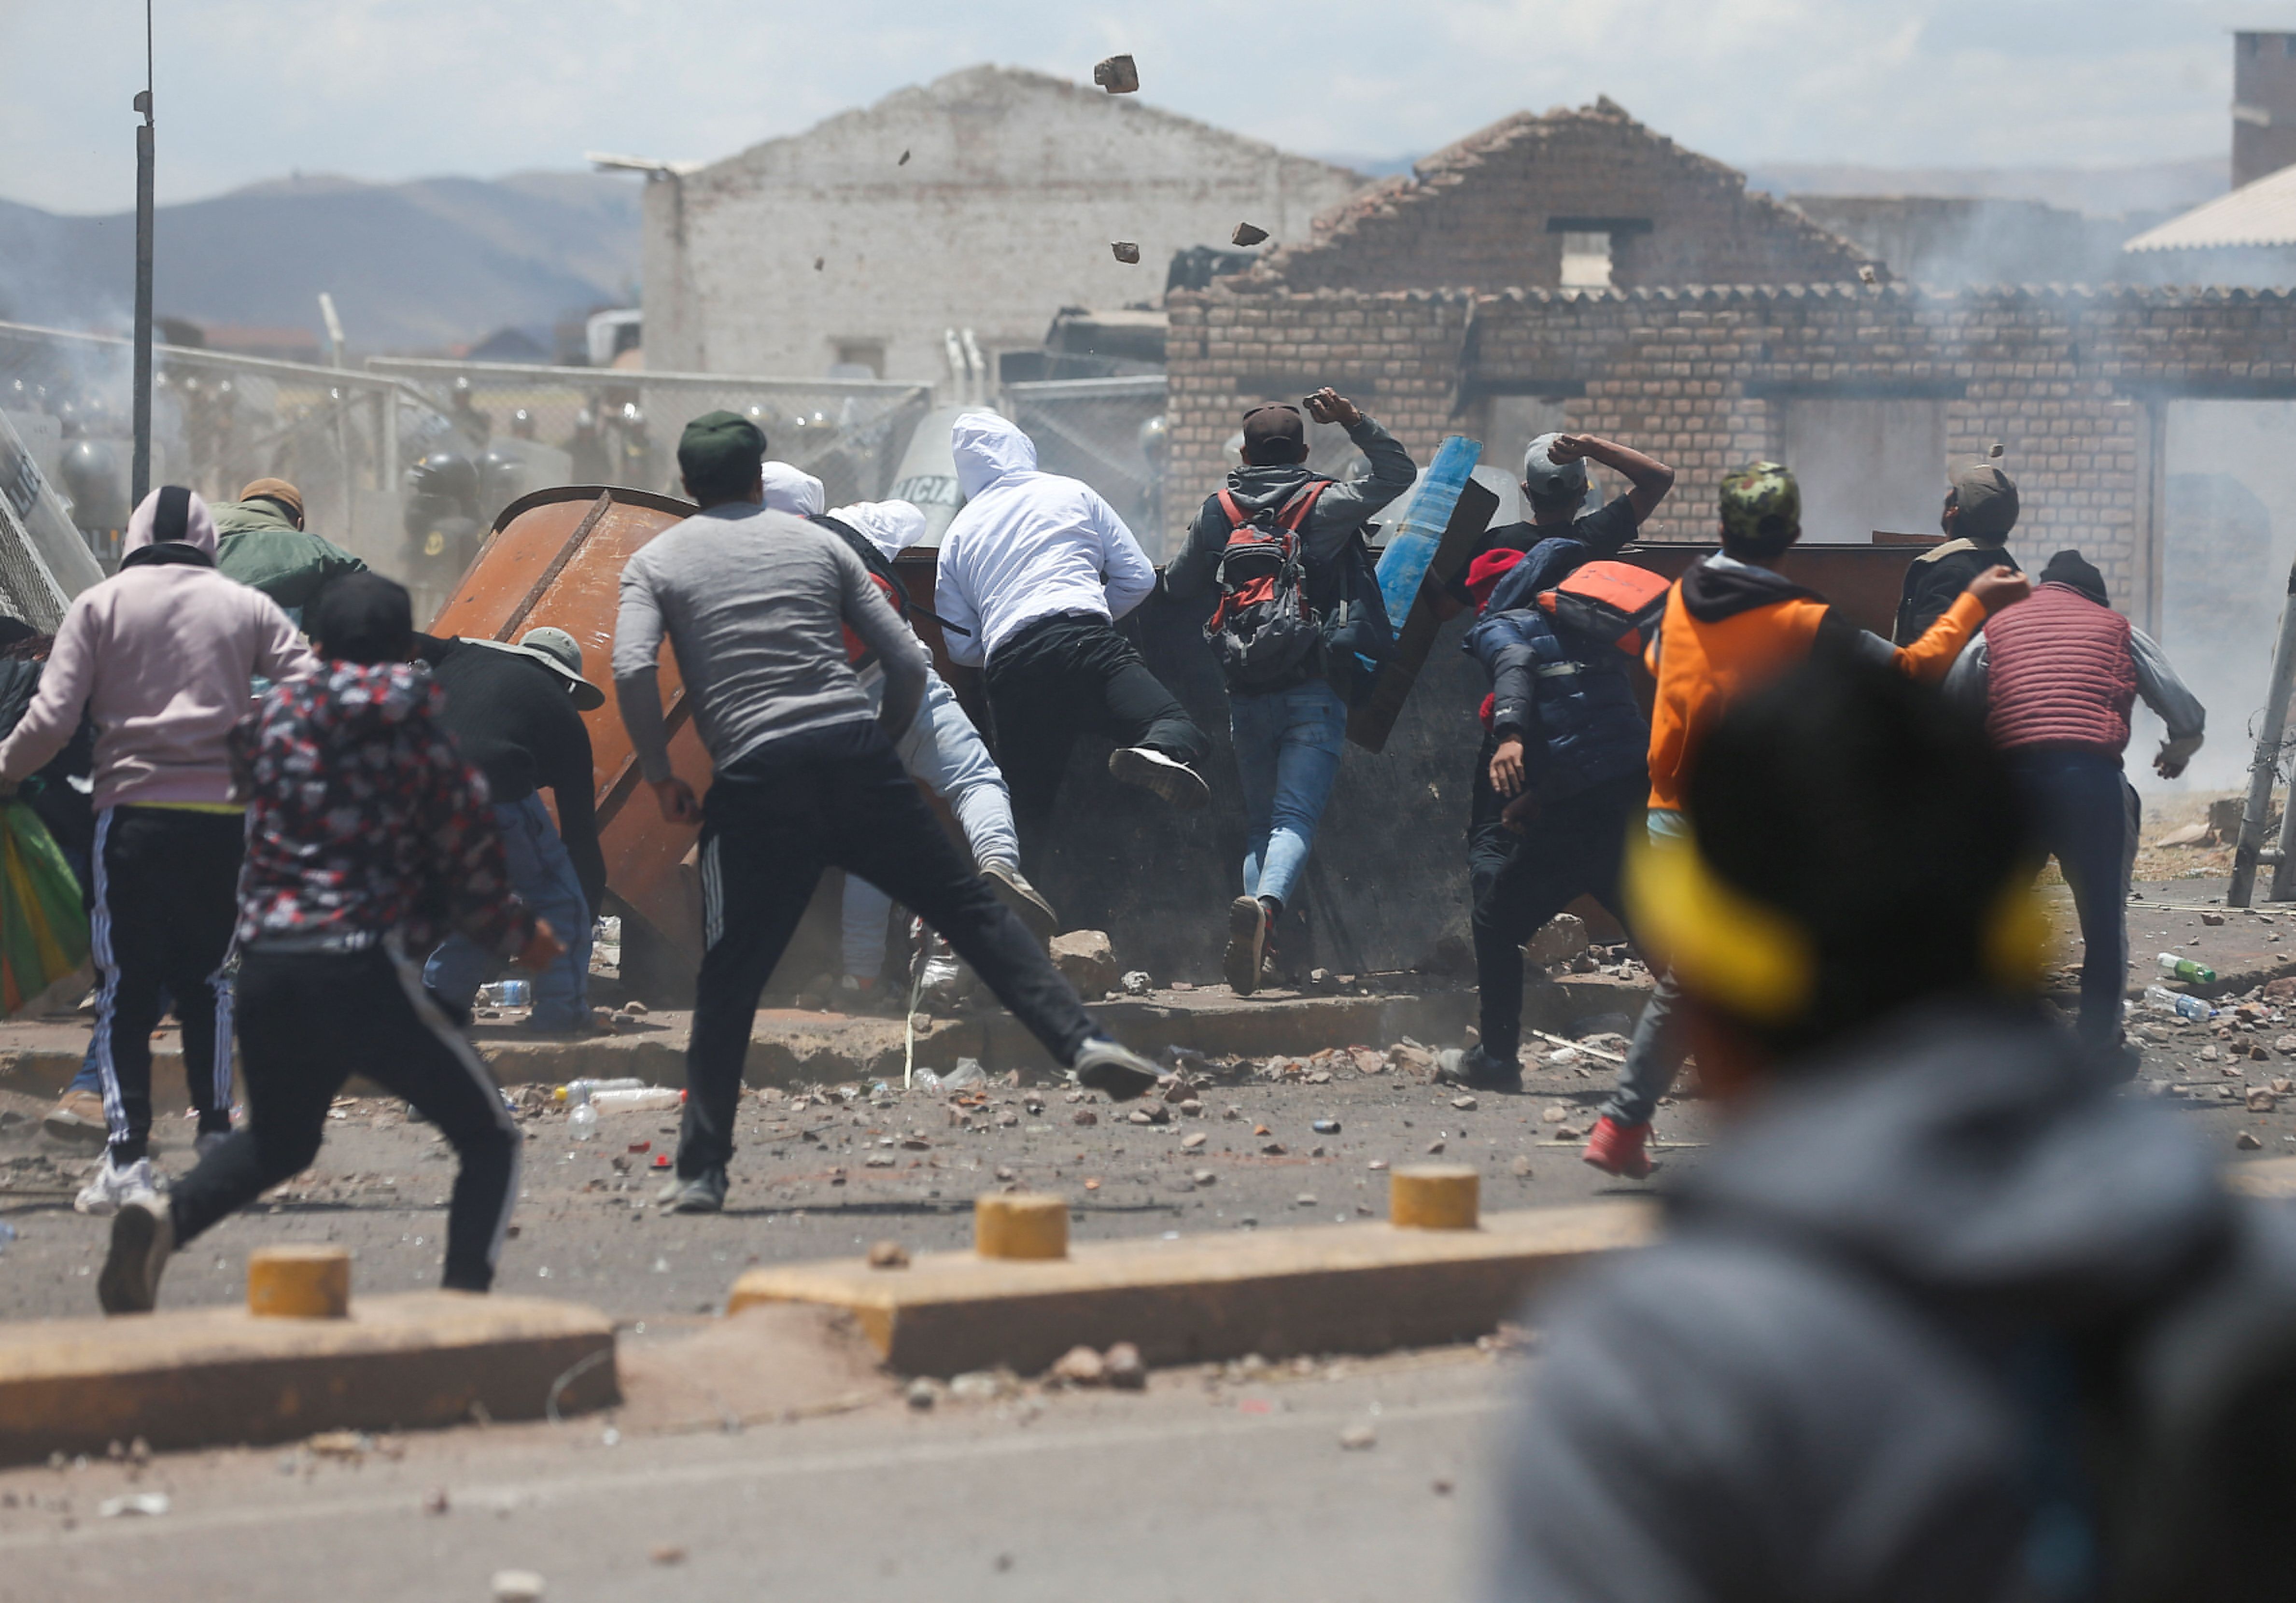 Así se vivió la violenta jornada de enfrentamientos en las inmediaciones del aeropuerto de Juliaca, el cual quedó destruido. REUTERS/Hugo Courotto